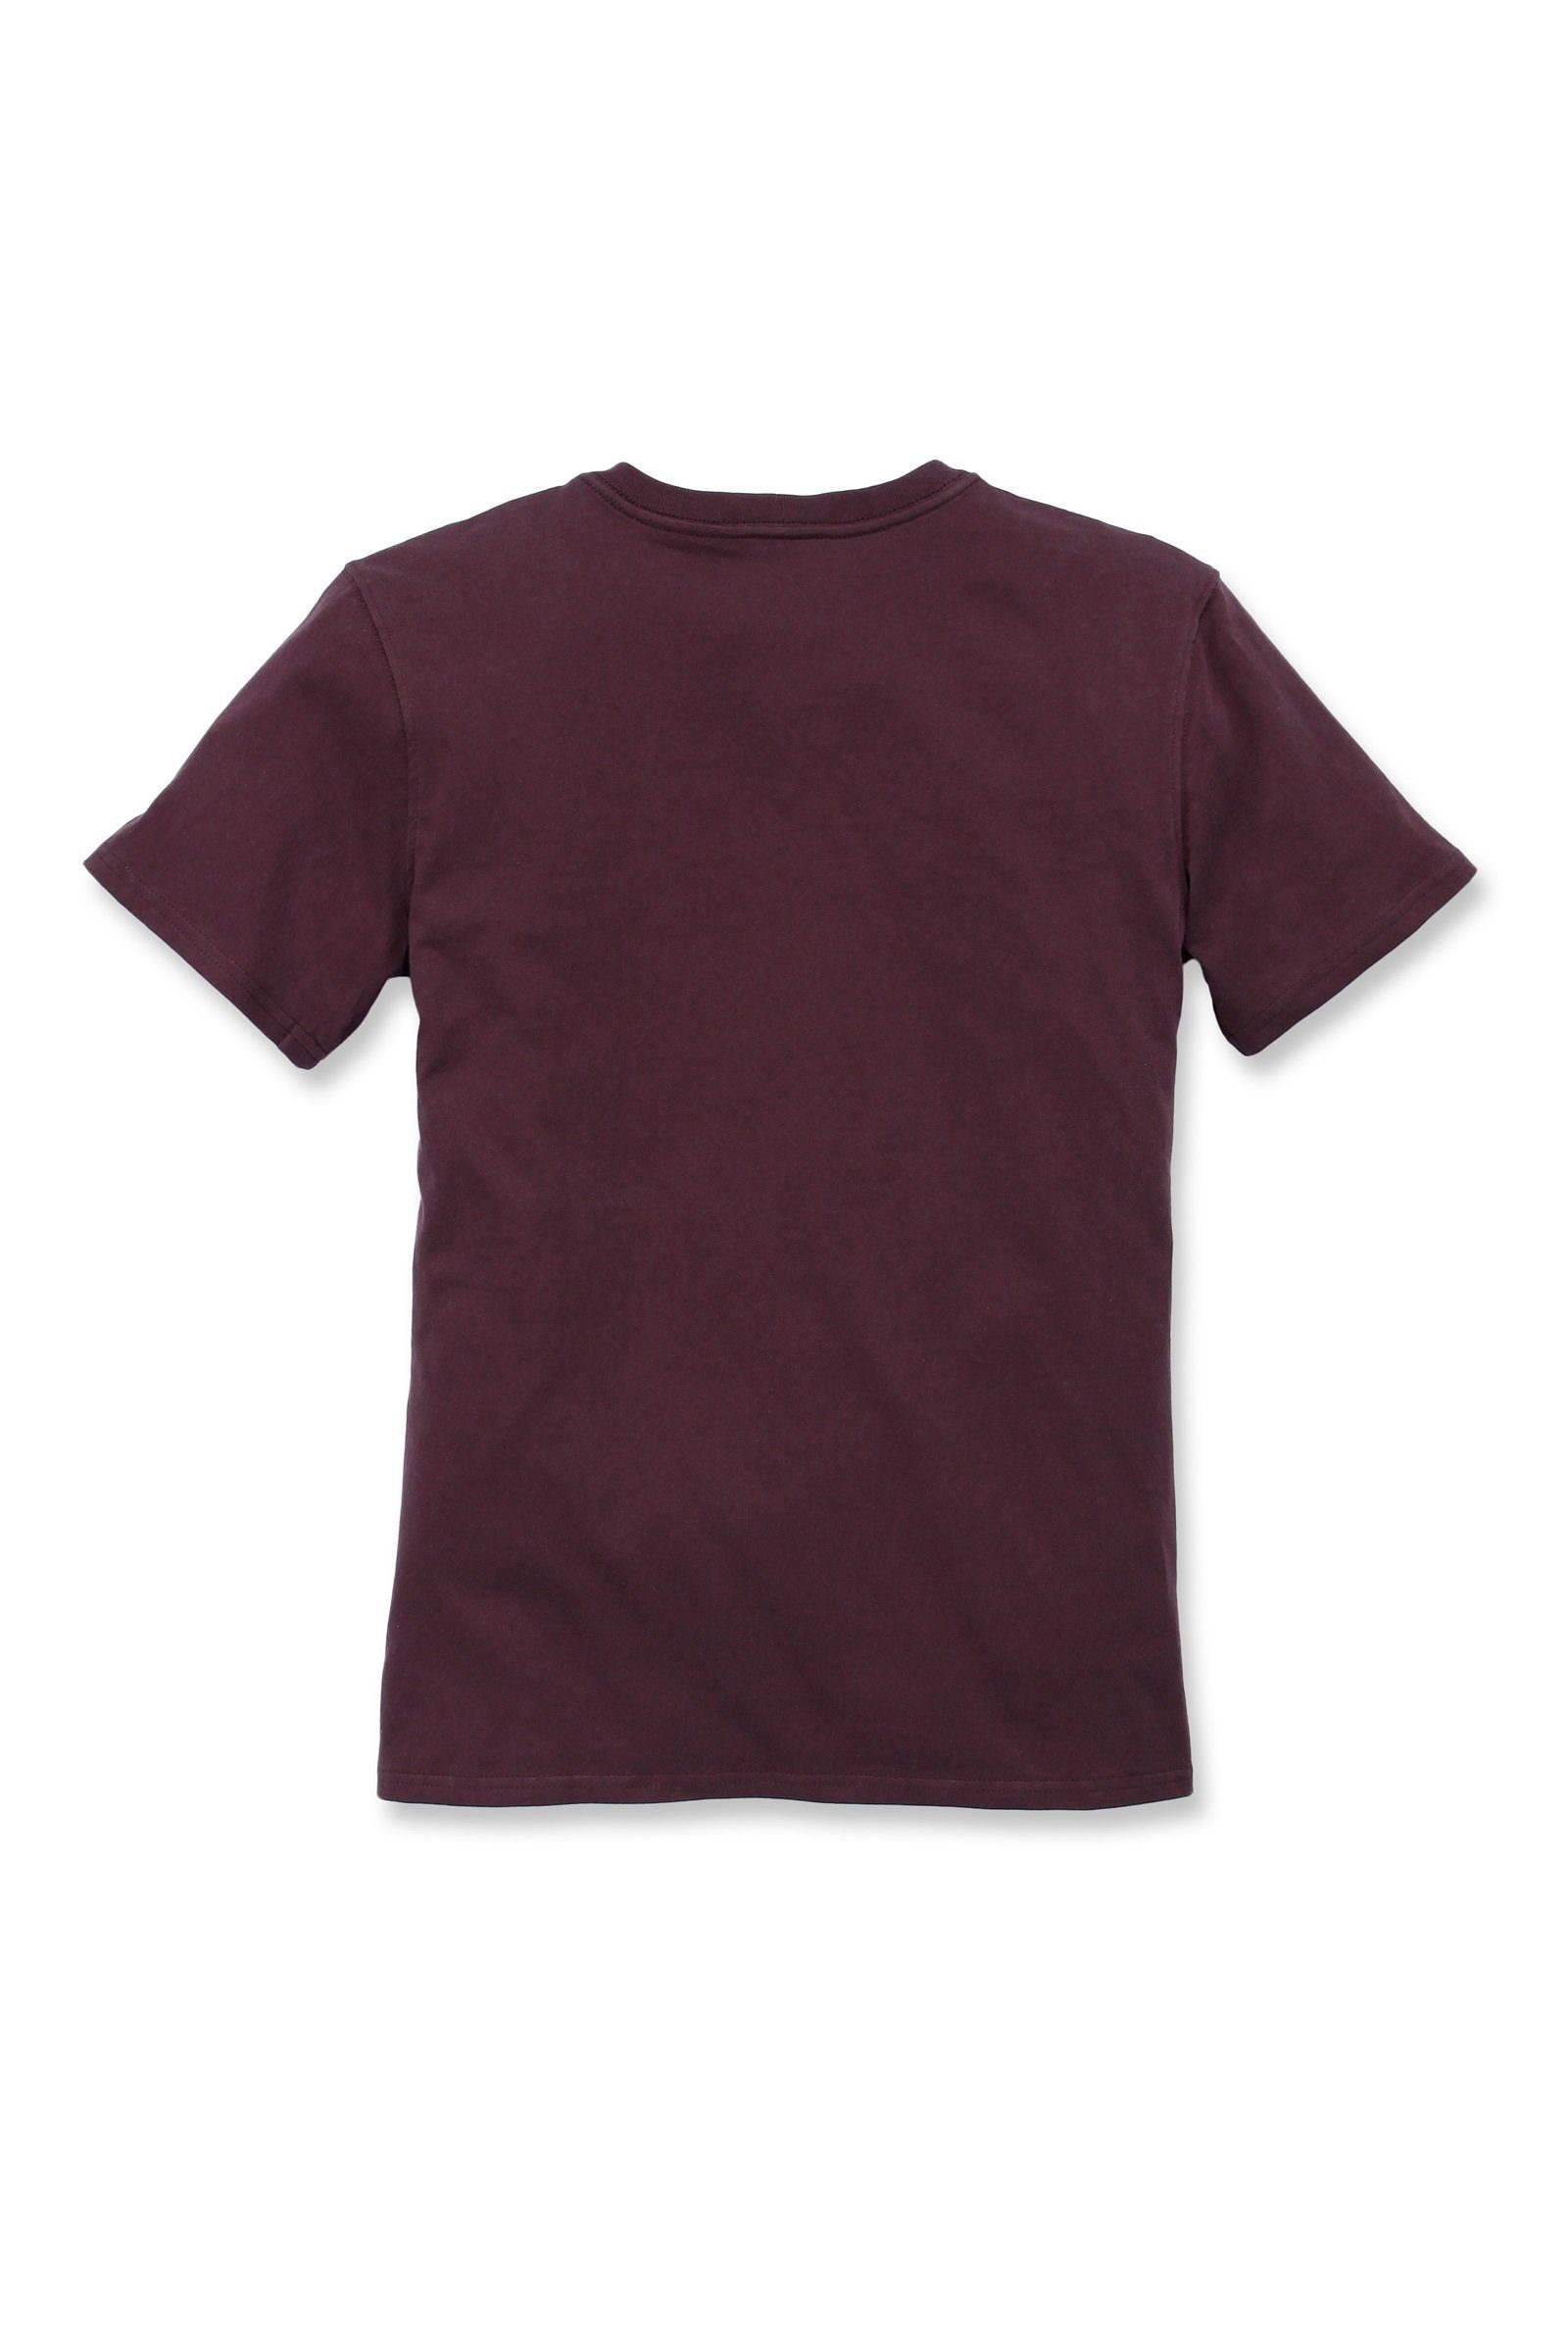 Fit Carhartt Heavyweight T-Shirt Short-Sleeve wine Adult Pocket Carhartt Loose deep Damen T-Shirt